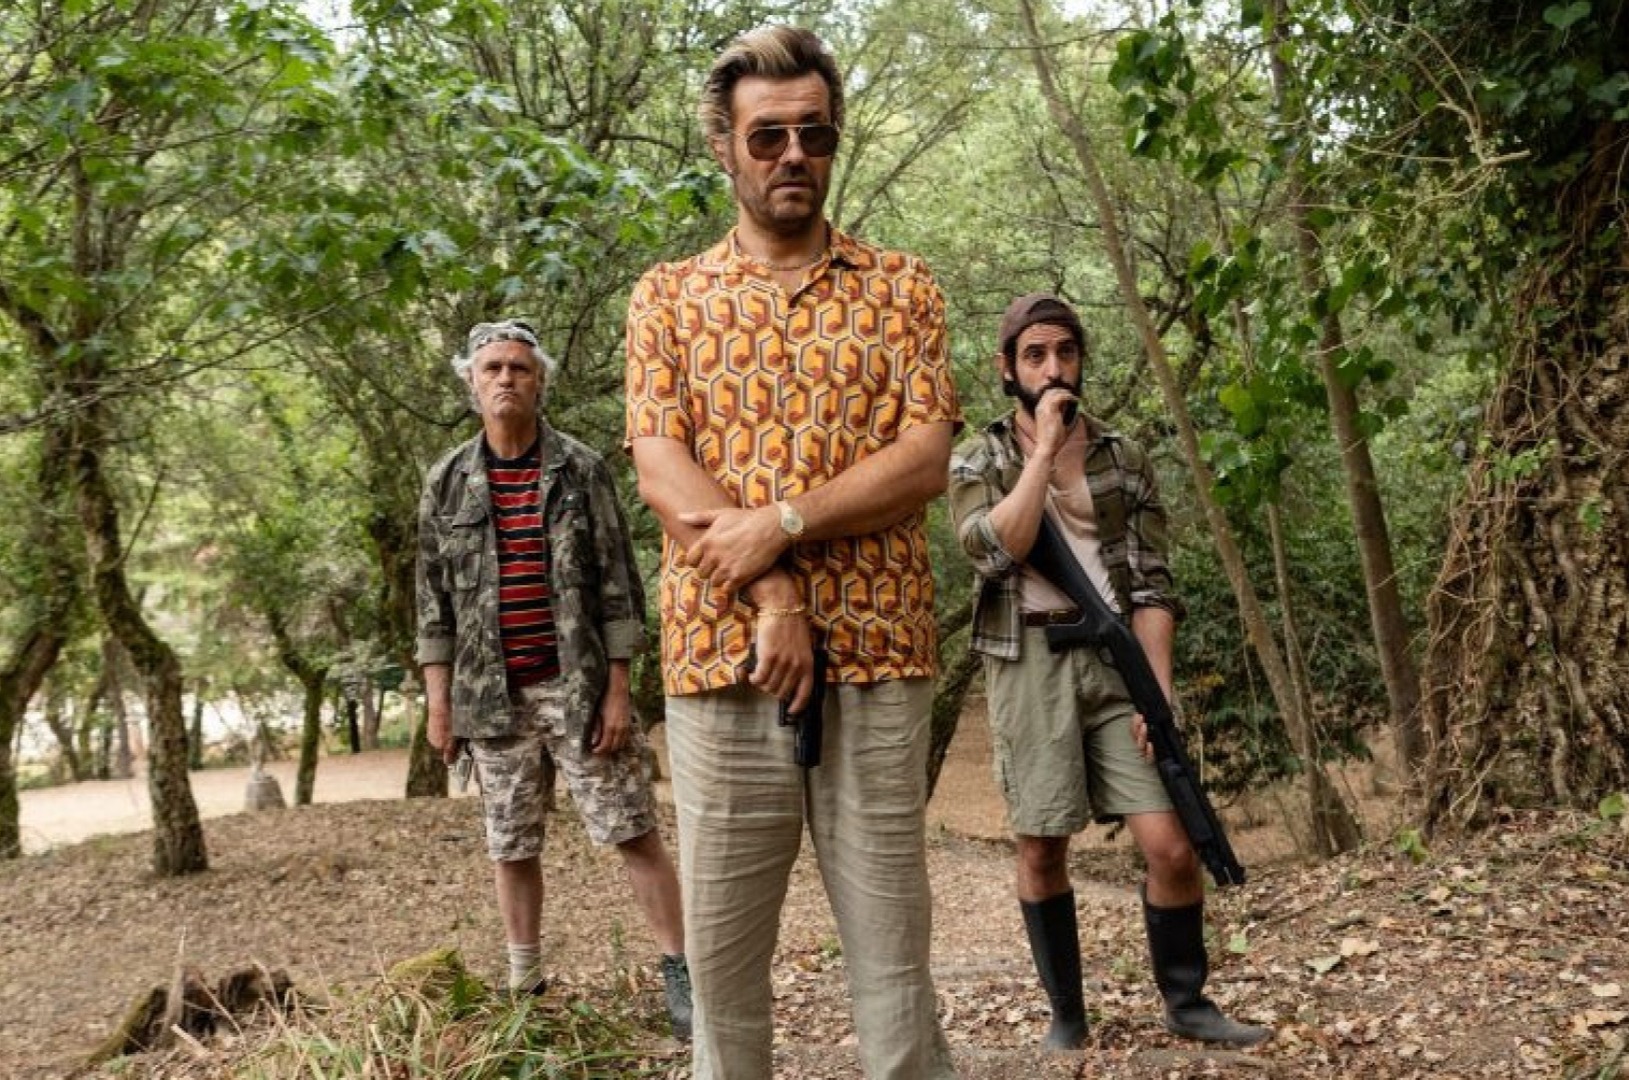 Série portuguesa Rabo de Peixe estreia-se em Maio na Netflix